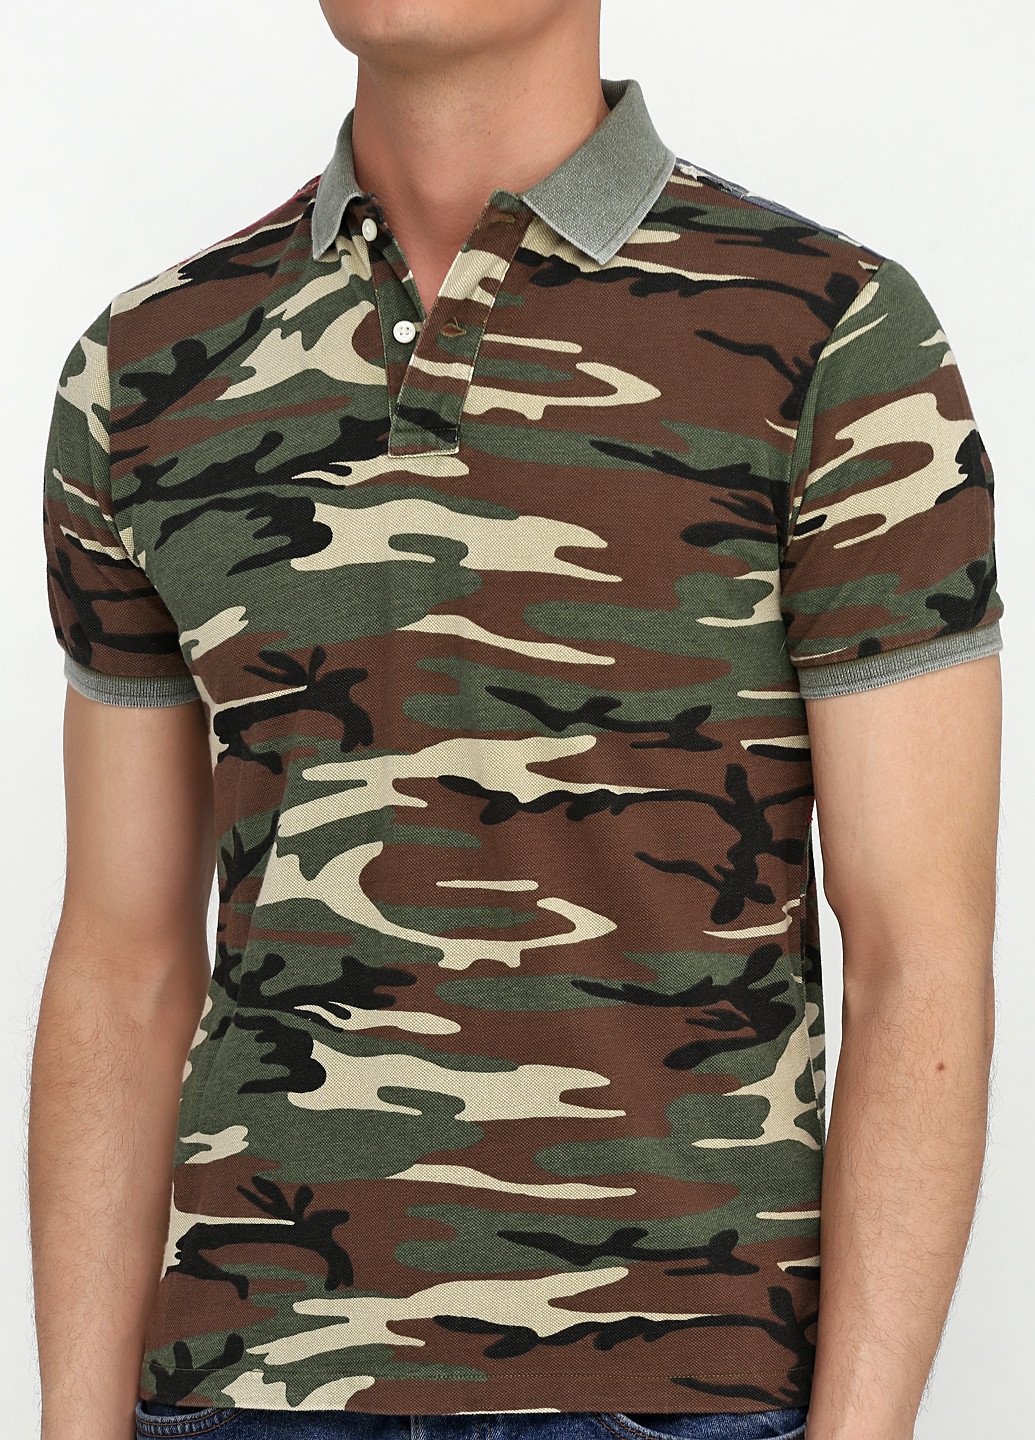 Оливковая (хаки) футболка-поло для мужчин Ralph Lauren с животным (анималистичным) принтом